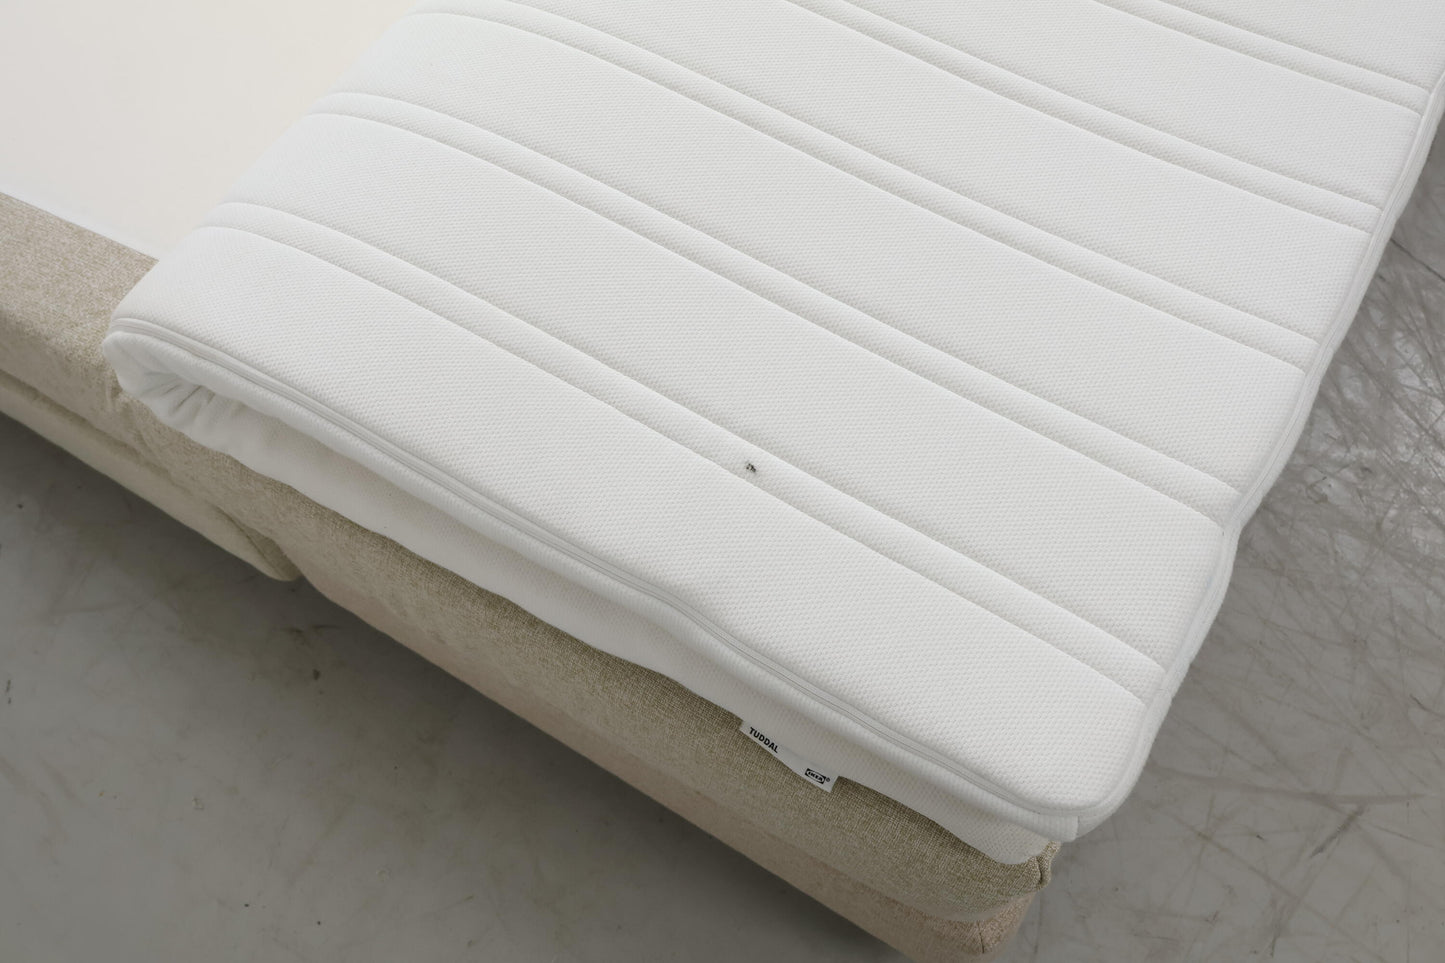 Nyrenset | Beige Jensen Pulse seng med Ikea Tuddal overmadrass, 160x200cm